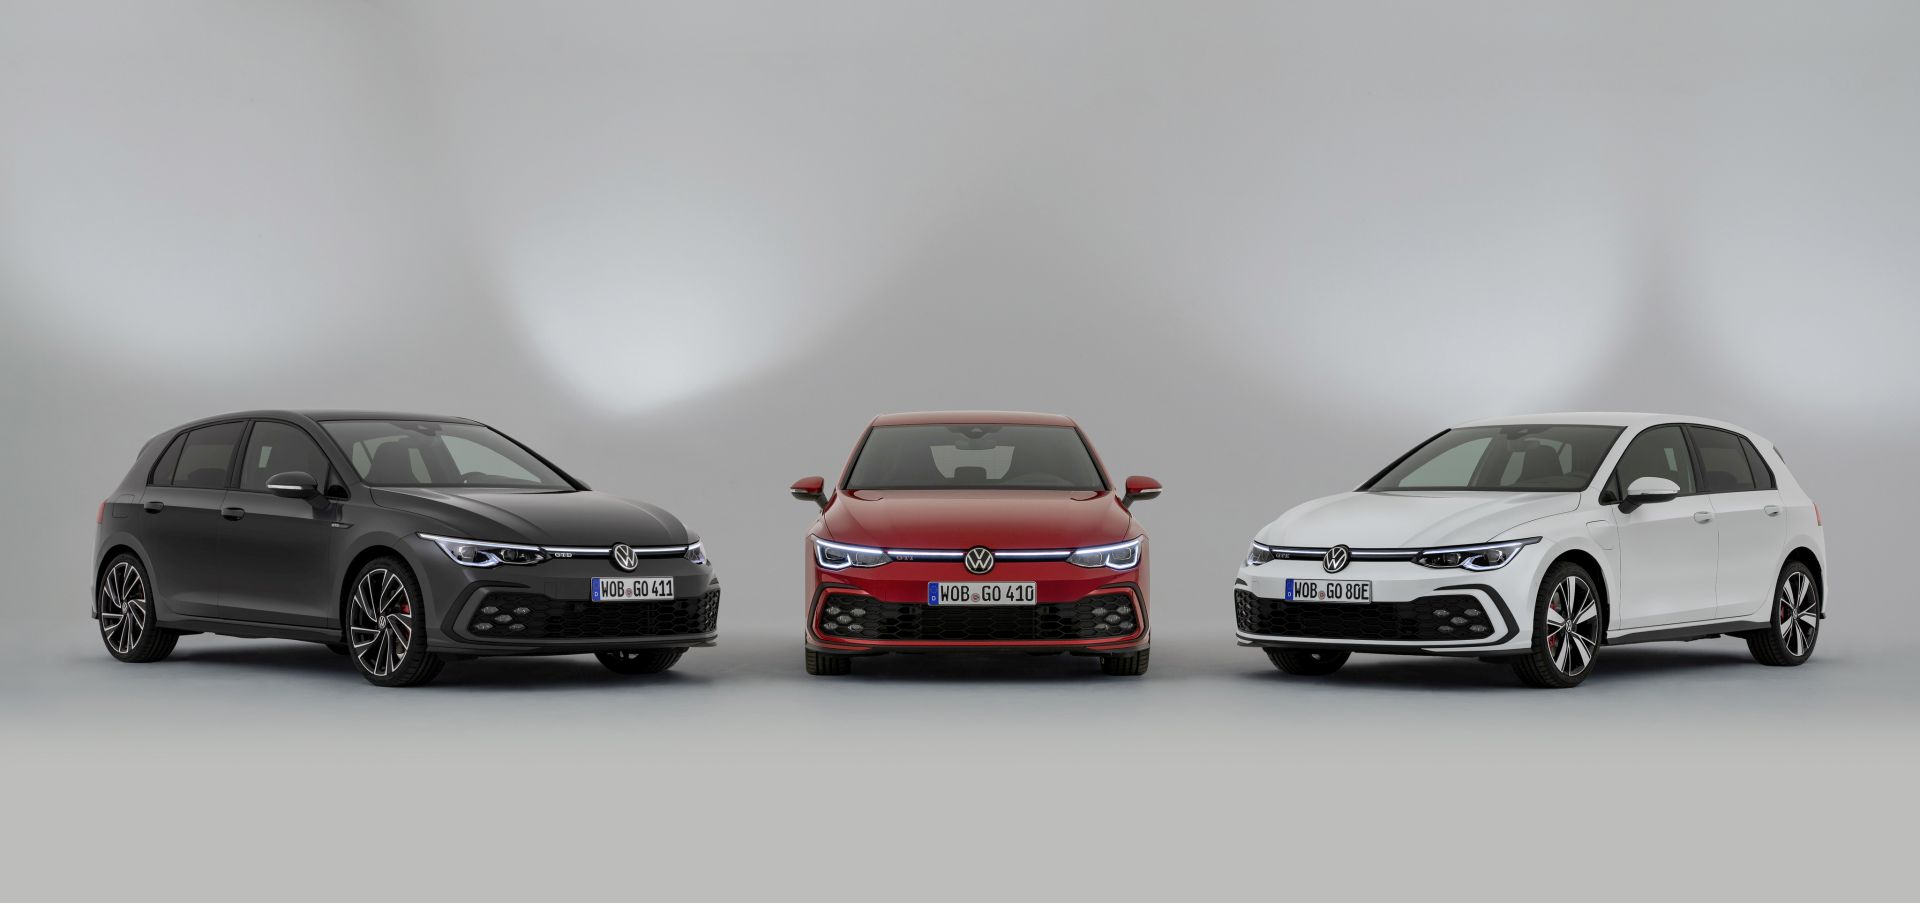 Predstavljena tri sportaša: Volkswagen Golf GTI, Golf GTD i Golf GTE